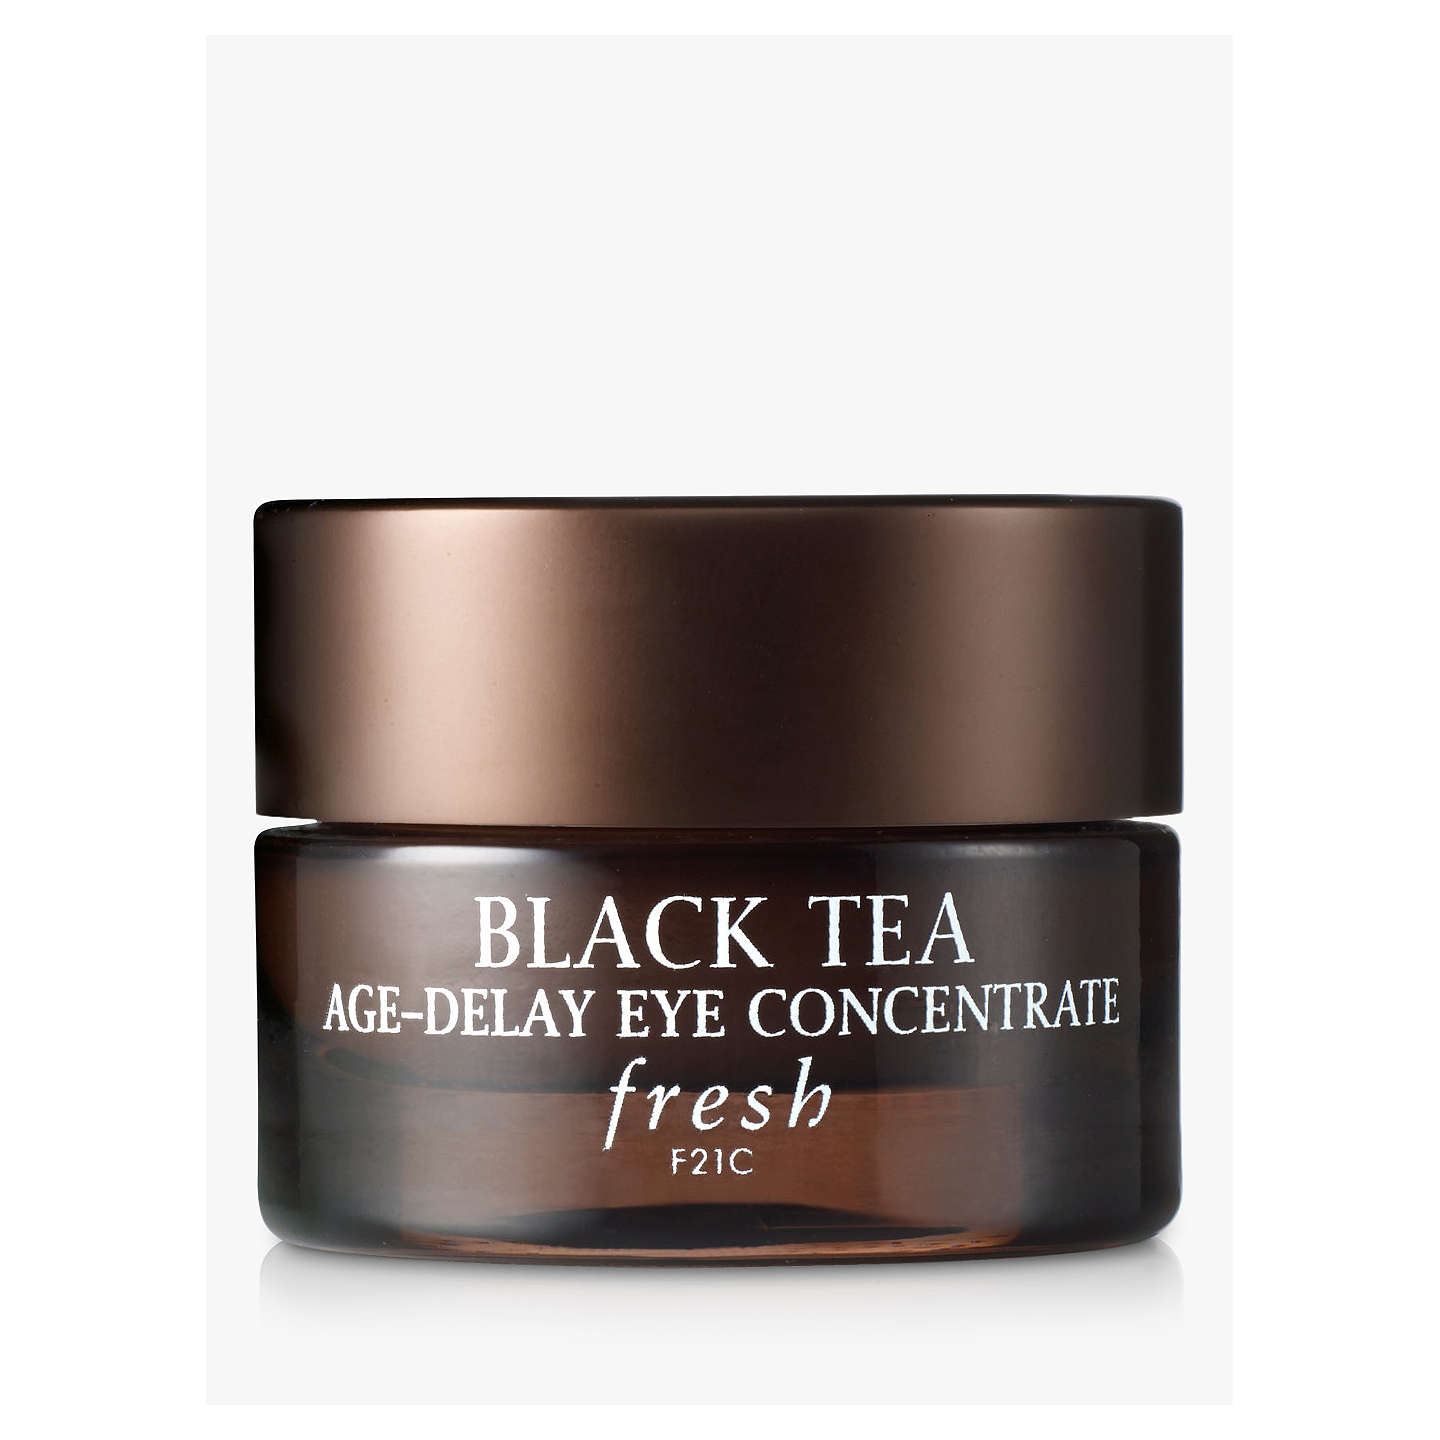 à¸à¸¥à¸à¸²à¸£à¸à¹à¸à¸«à¸²à¸£à¸¹à¸à¸�à¸²à¸à¸ªà¸³à¸«à¸£à¸±à¸ Fresh Black Tea Age-Delay Eye Concentrate 15 ml.